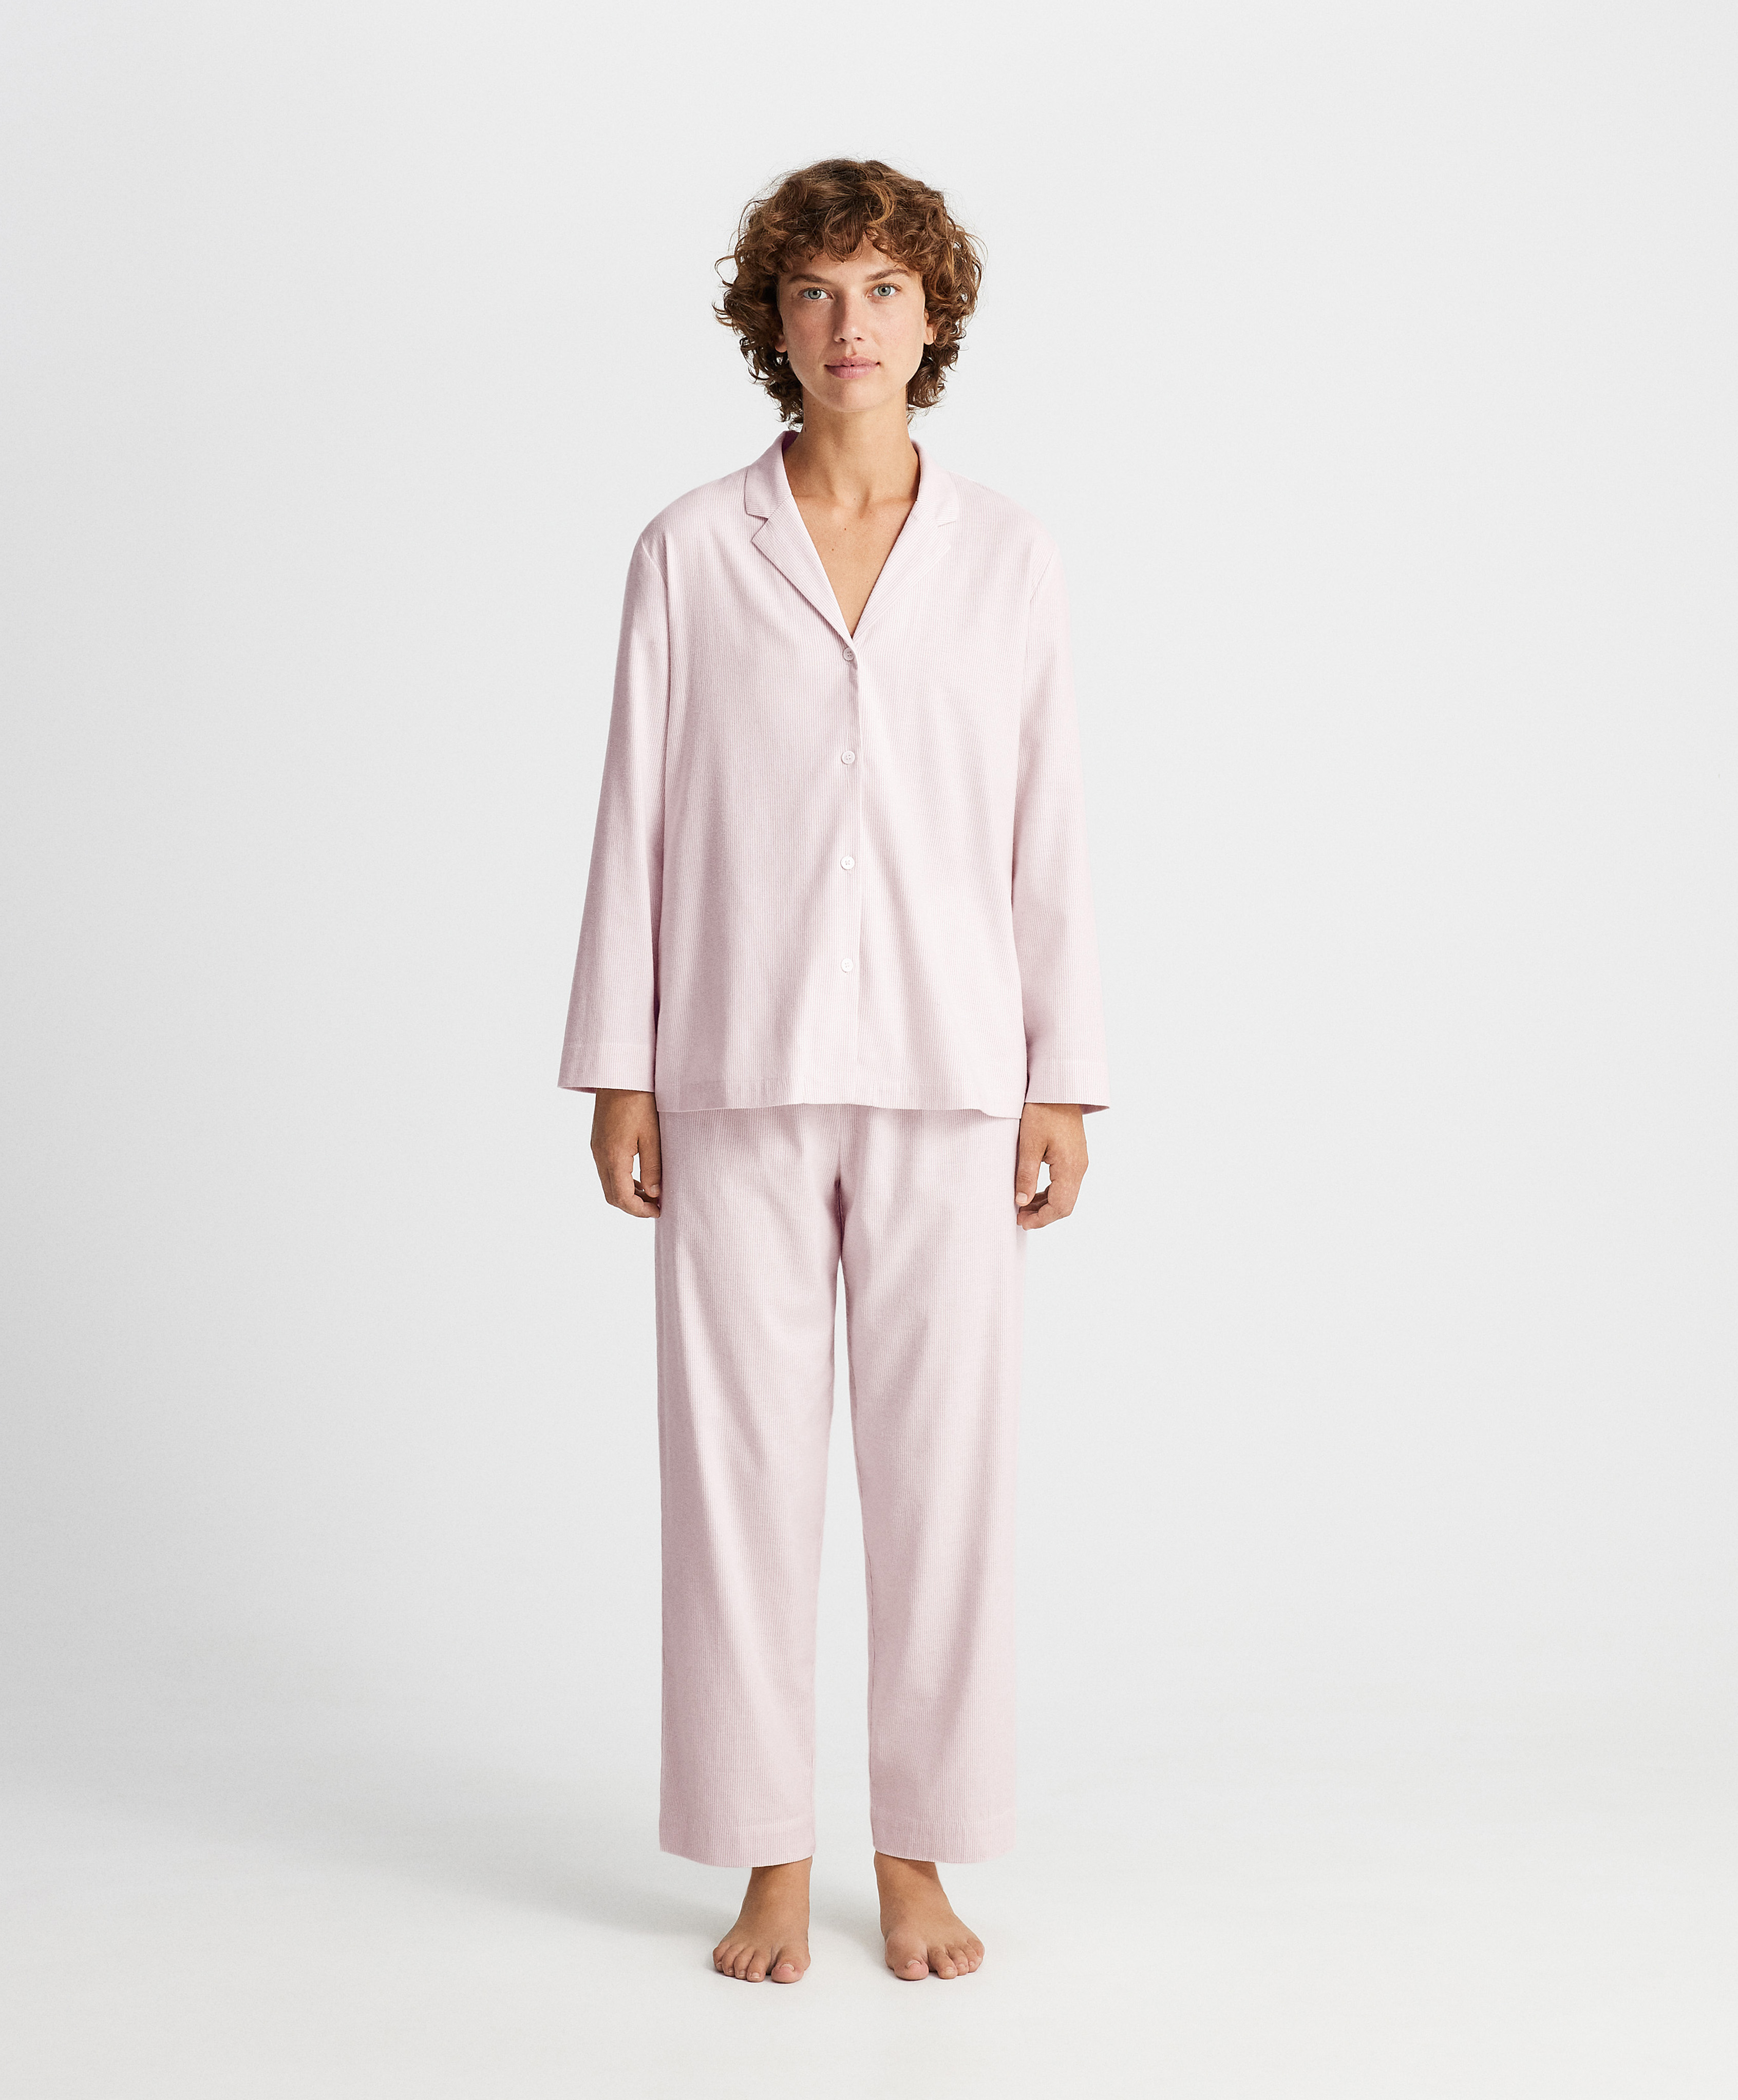 Длинная пижама с рубашкой в розовую полоску из ткани Stretch